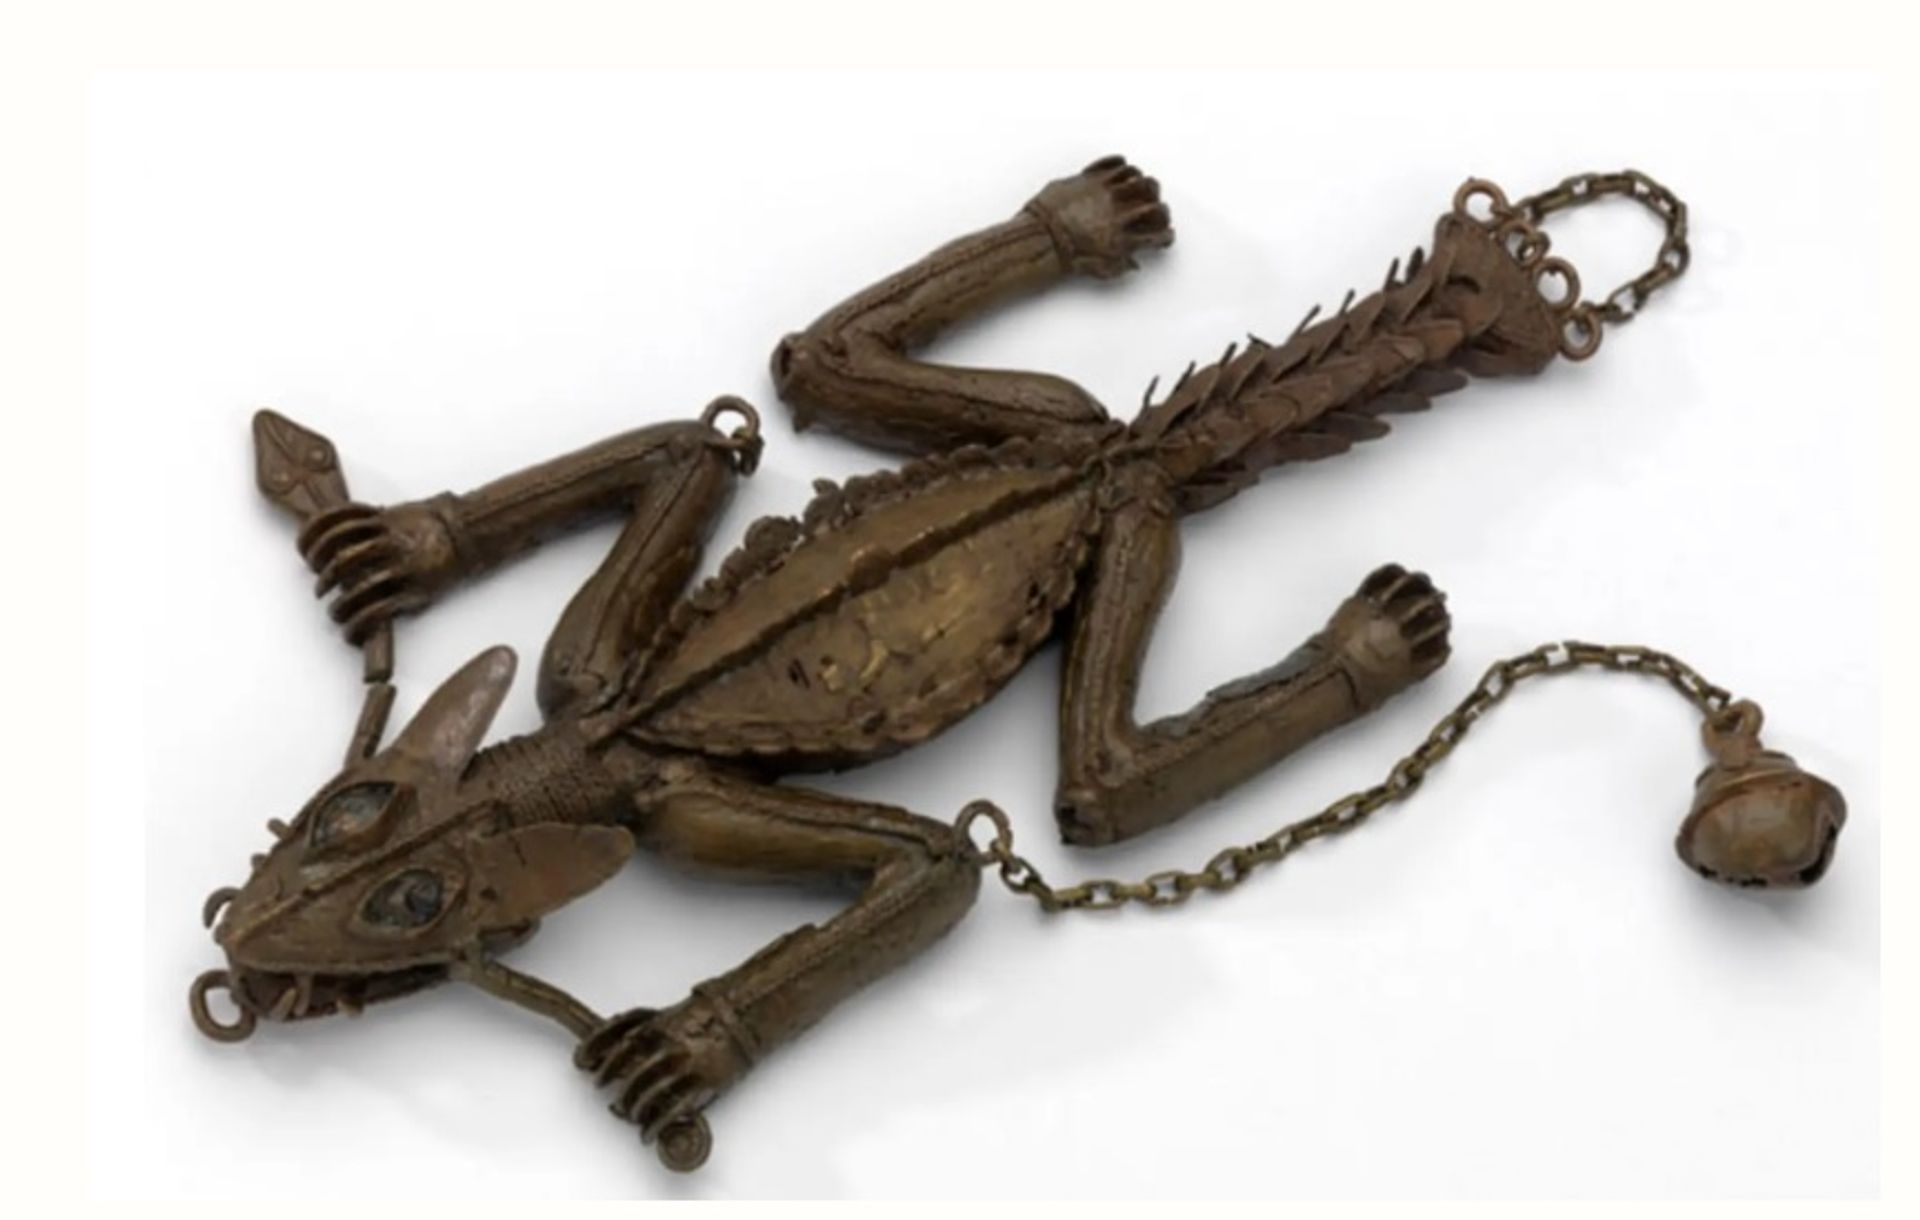 קישוט גב מברונזה של תנין או לטאה, מניגריה, כנראה מבנין. נמצא כעת במוזיאון לאמנות קלווינגרוב בגלזגו